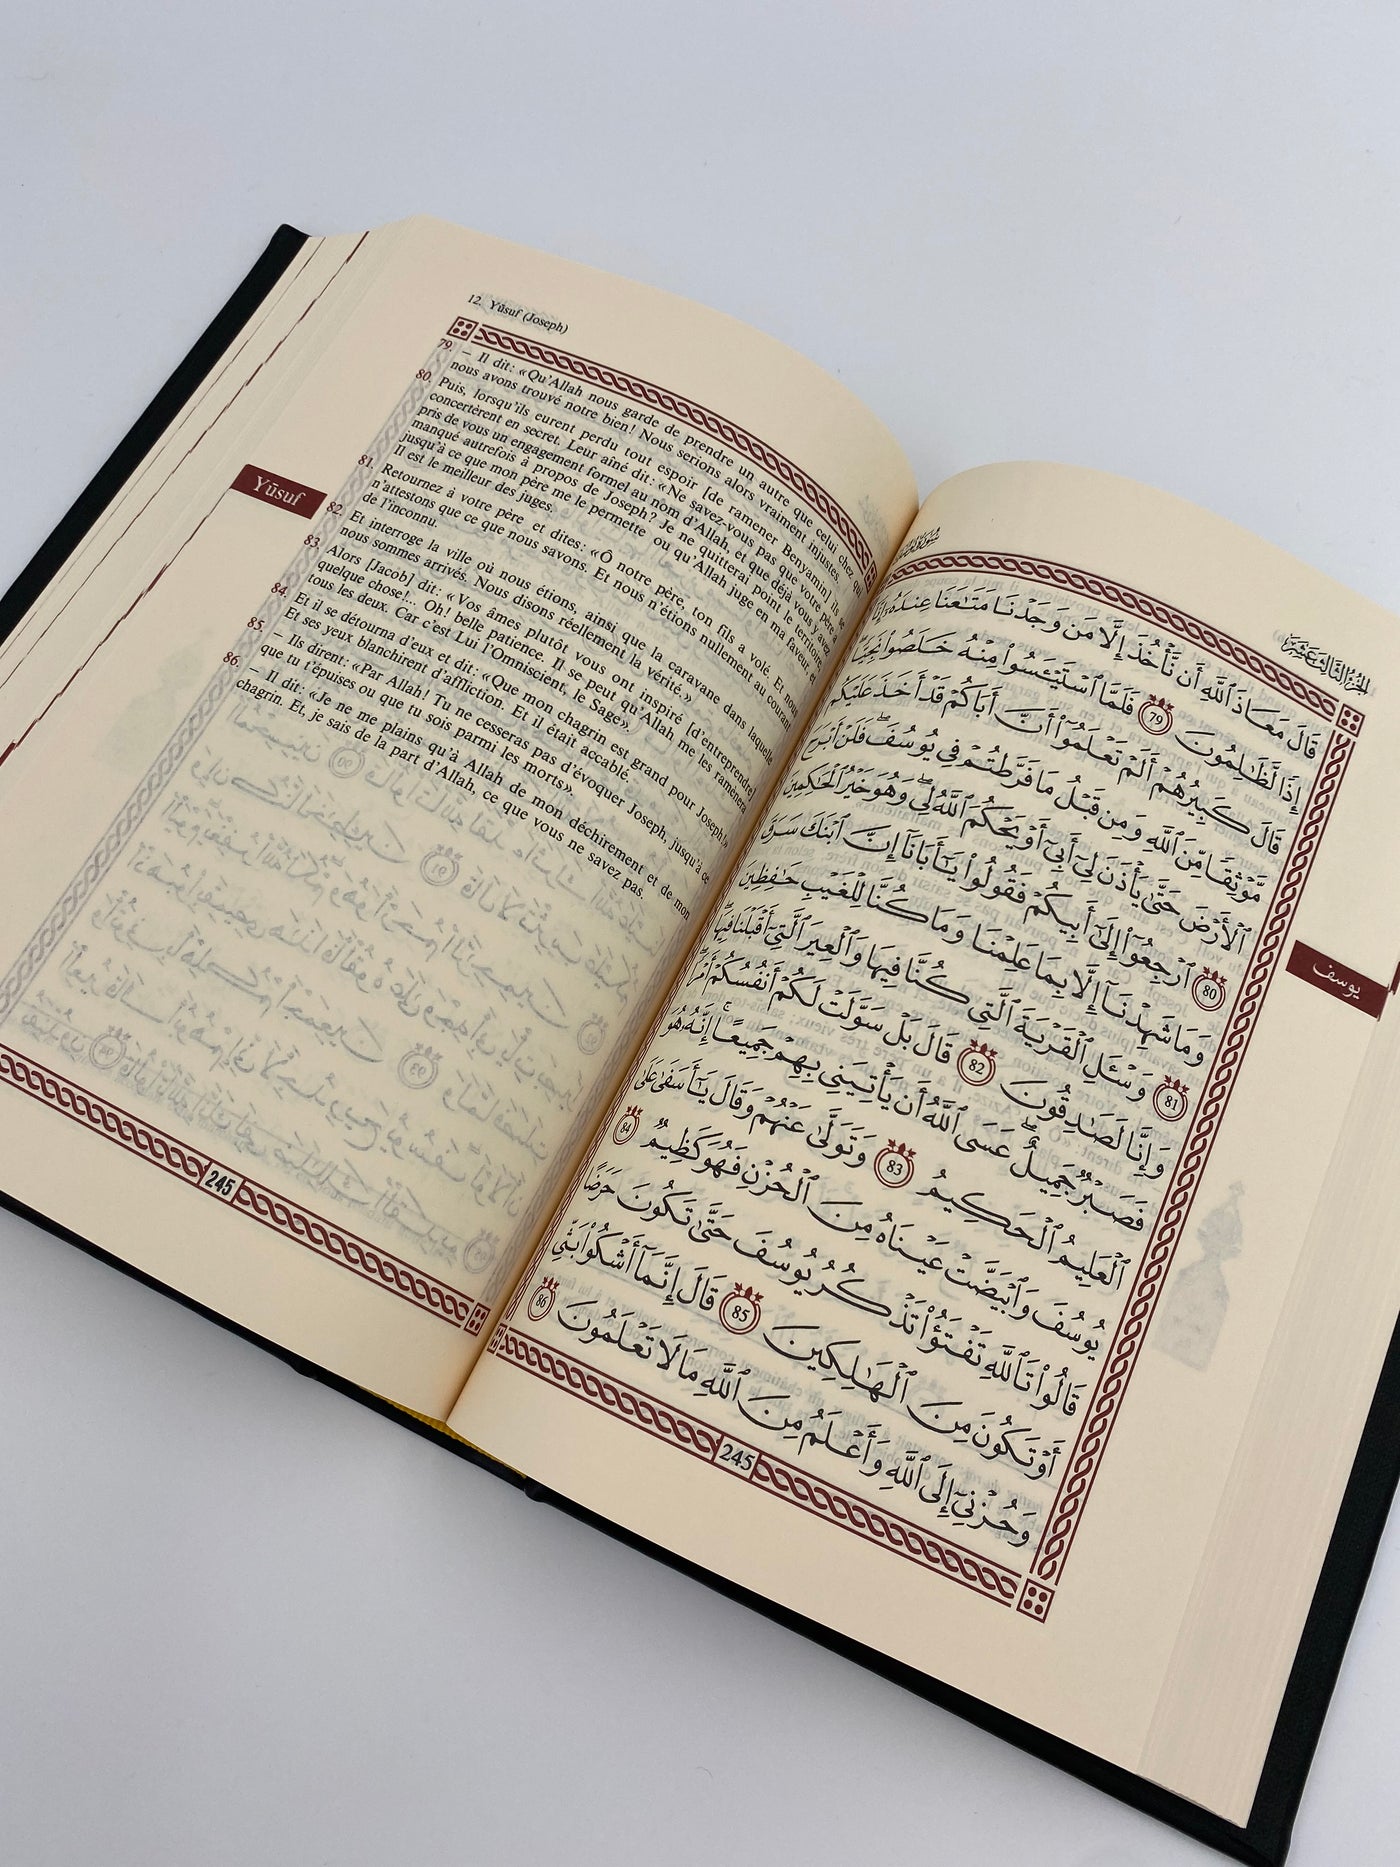 Der Edle Koran und die französische Übersetzung seiner schwarzen Bedeutungen